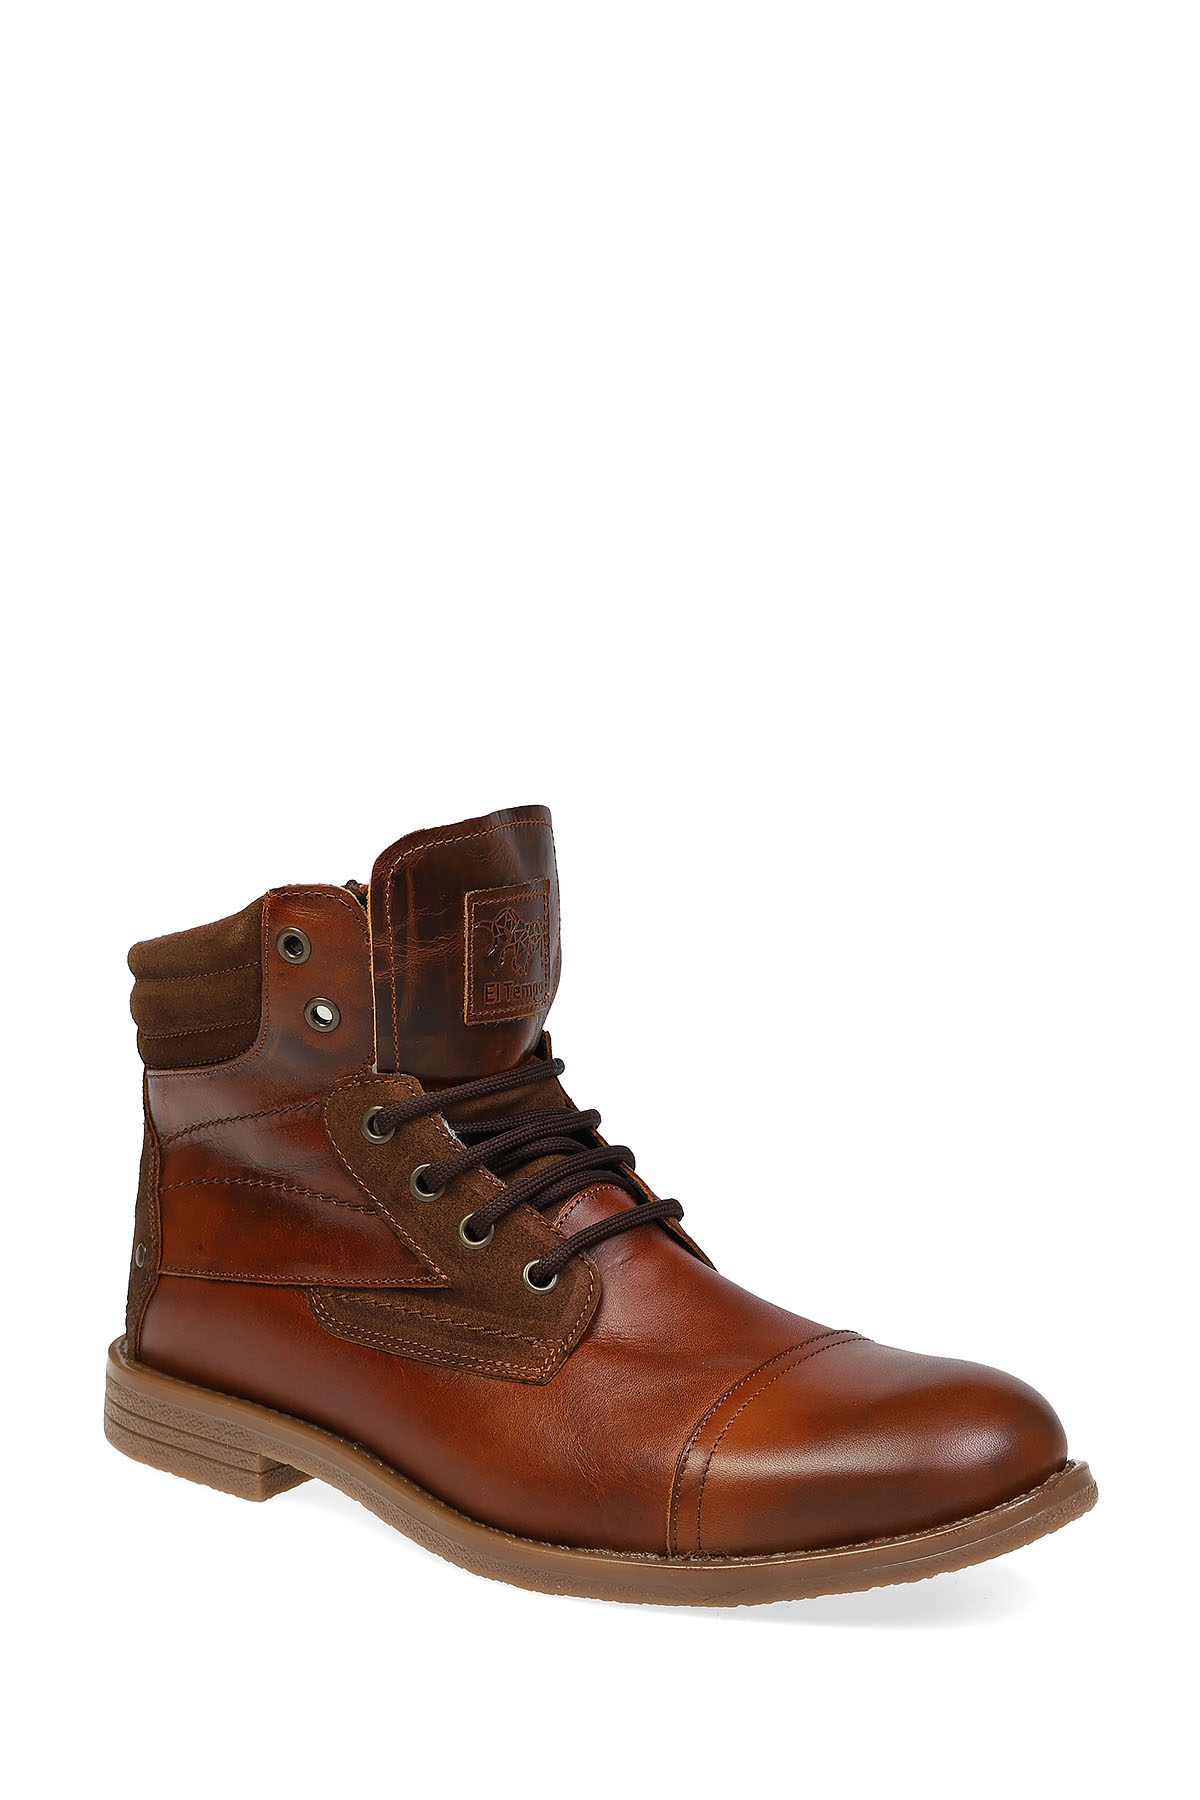 Ботинки мужские El Tempo PAS46_001 коричневые 41 RU